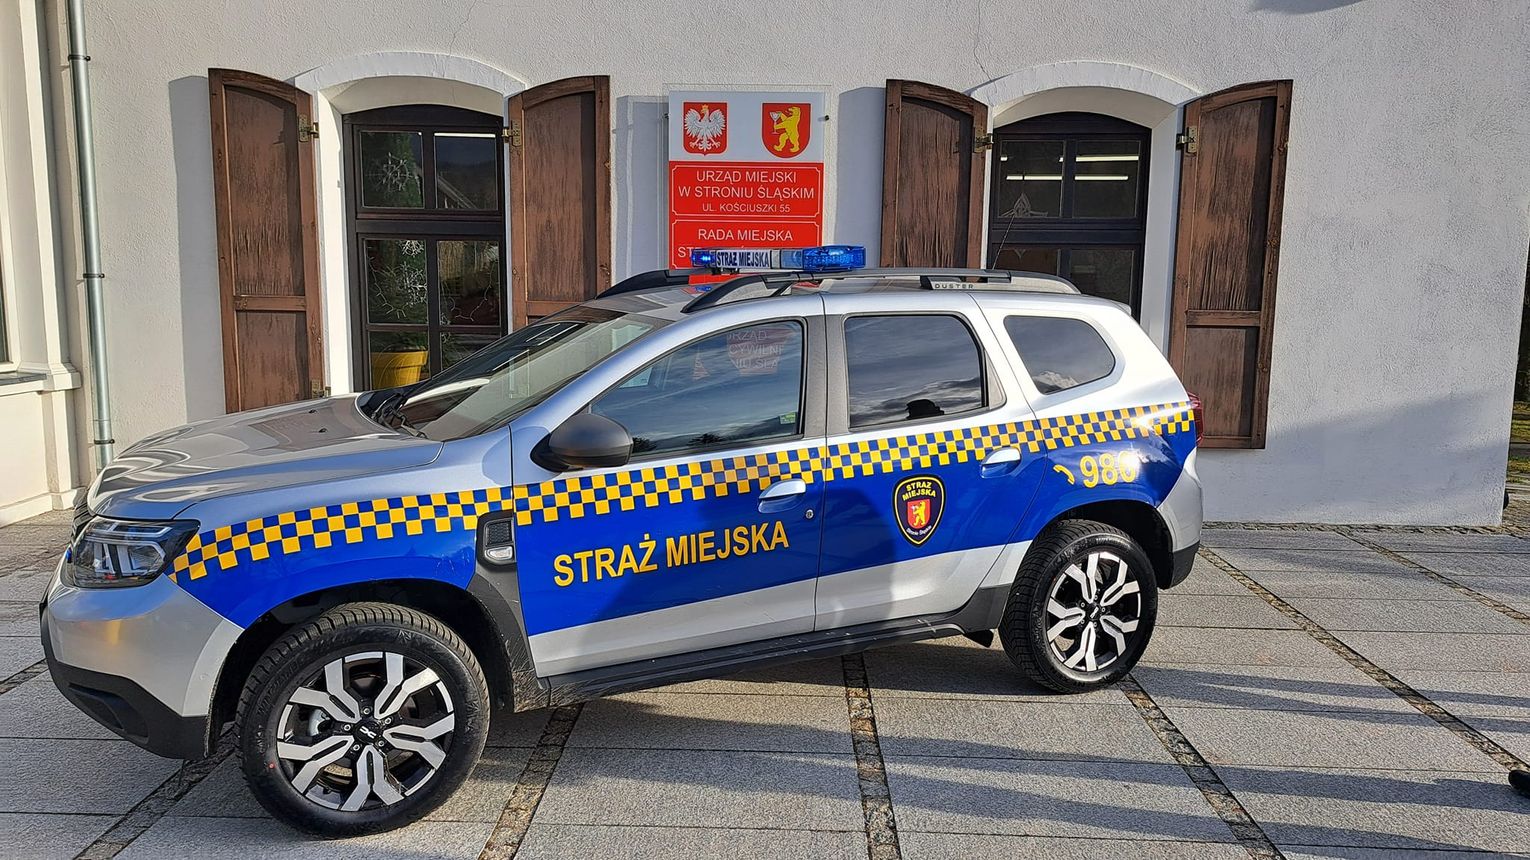 Strażnicy Miejscy W Stroniu Śląskim Mają Nowy Samochód 8038